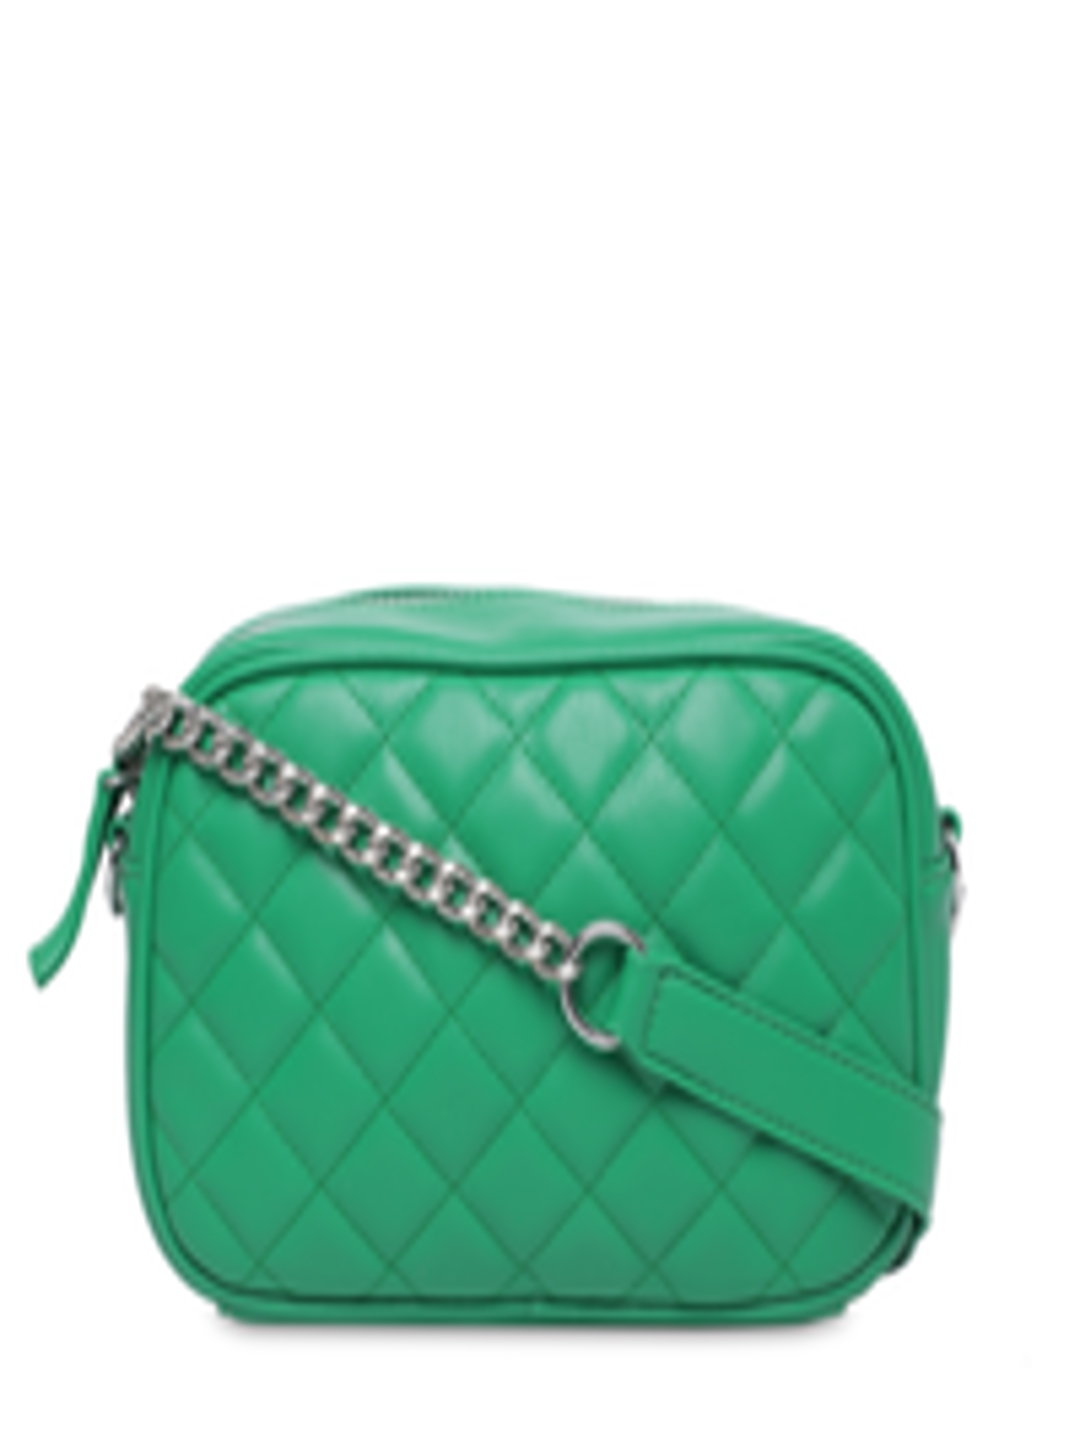 Buy FOREVER 21 Green Textured Sling Bag - Handbags for Women 8332835 | Myntra